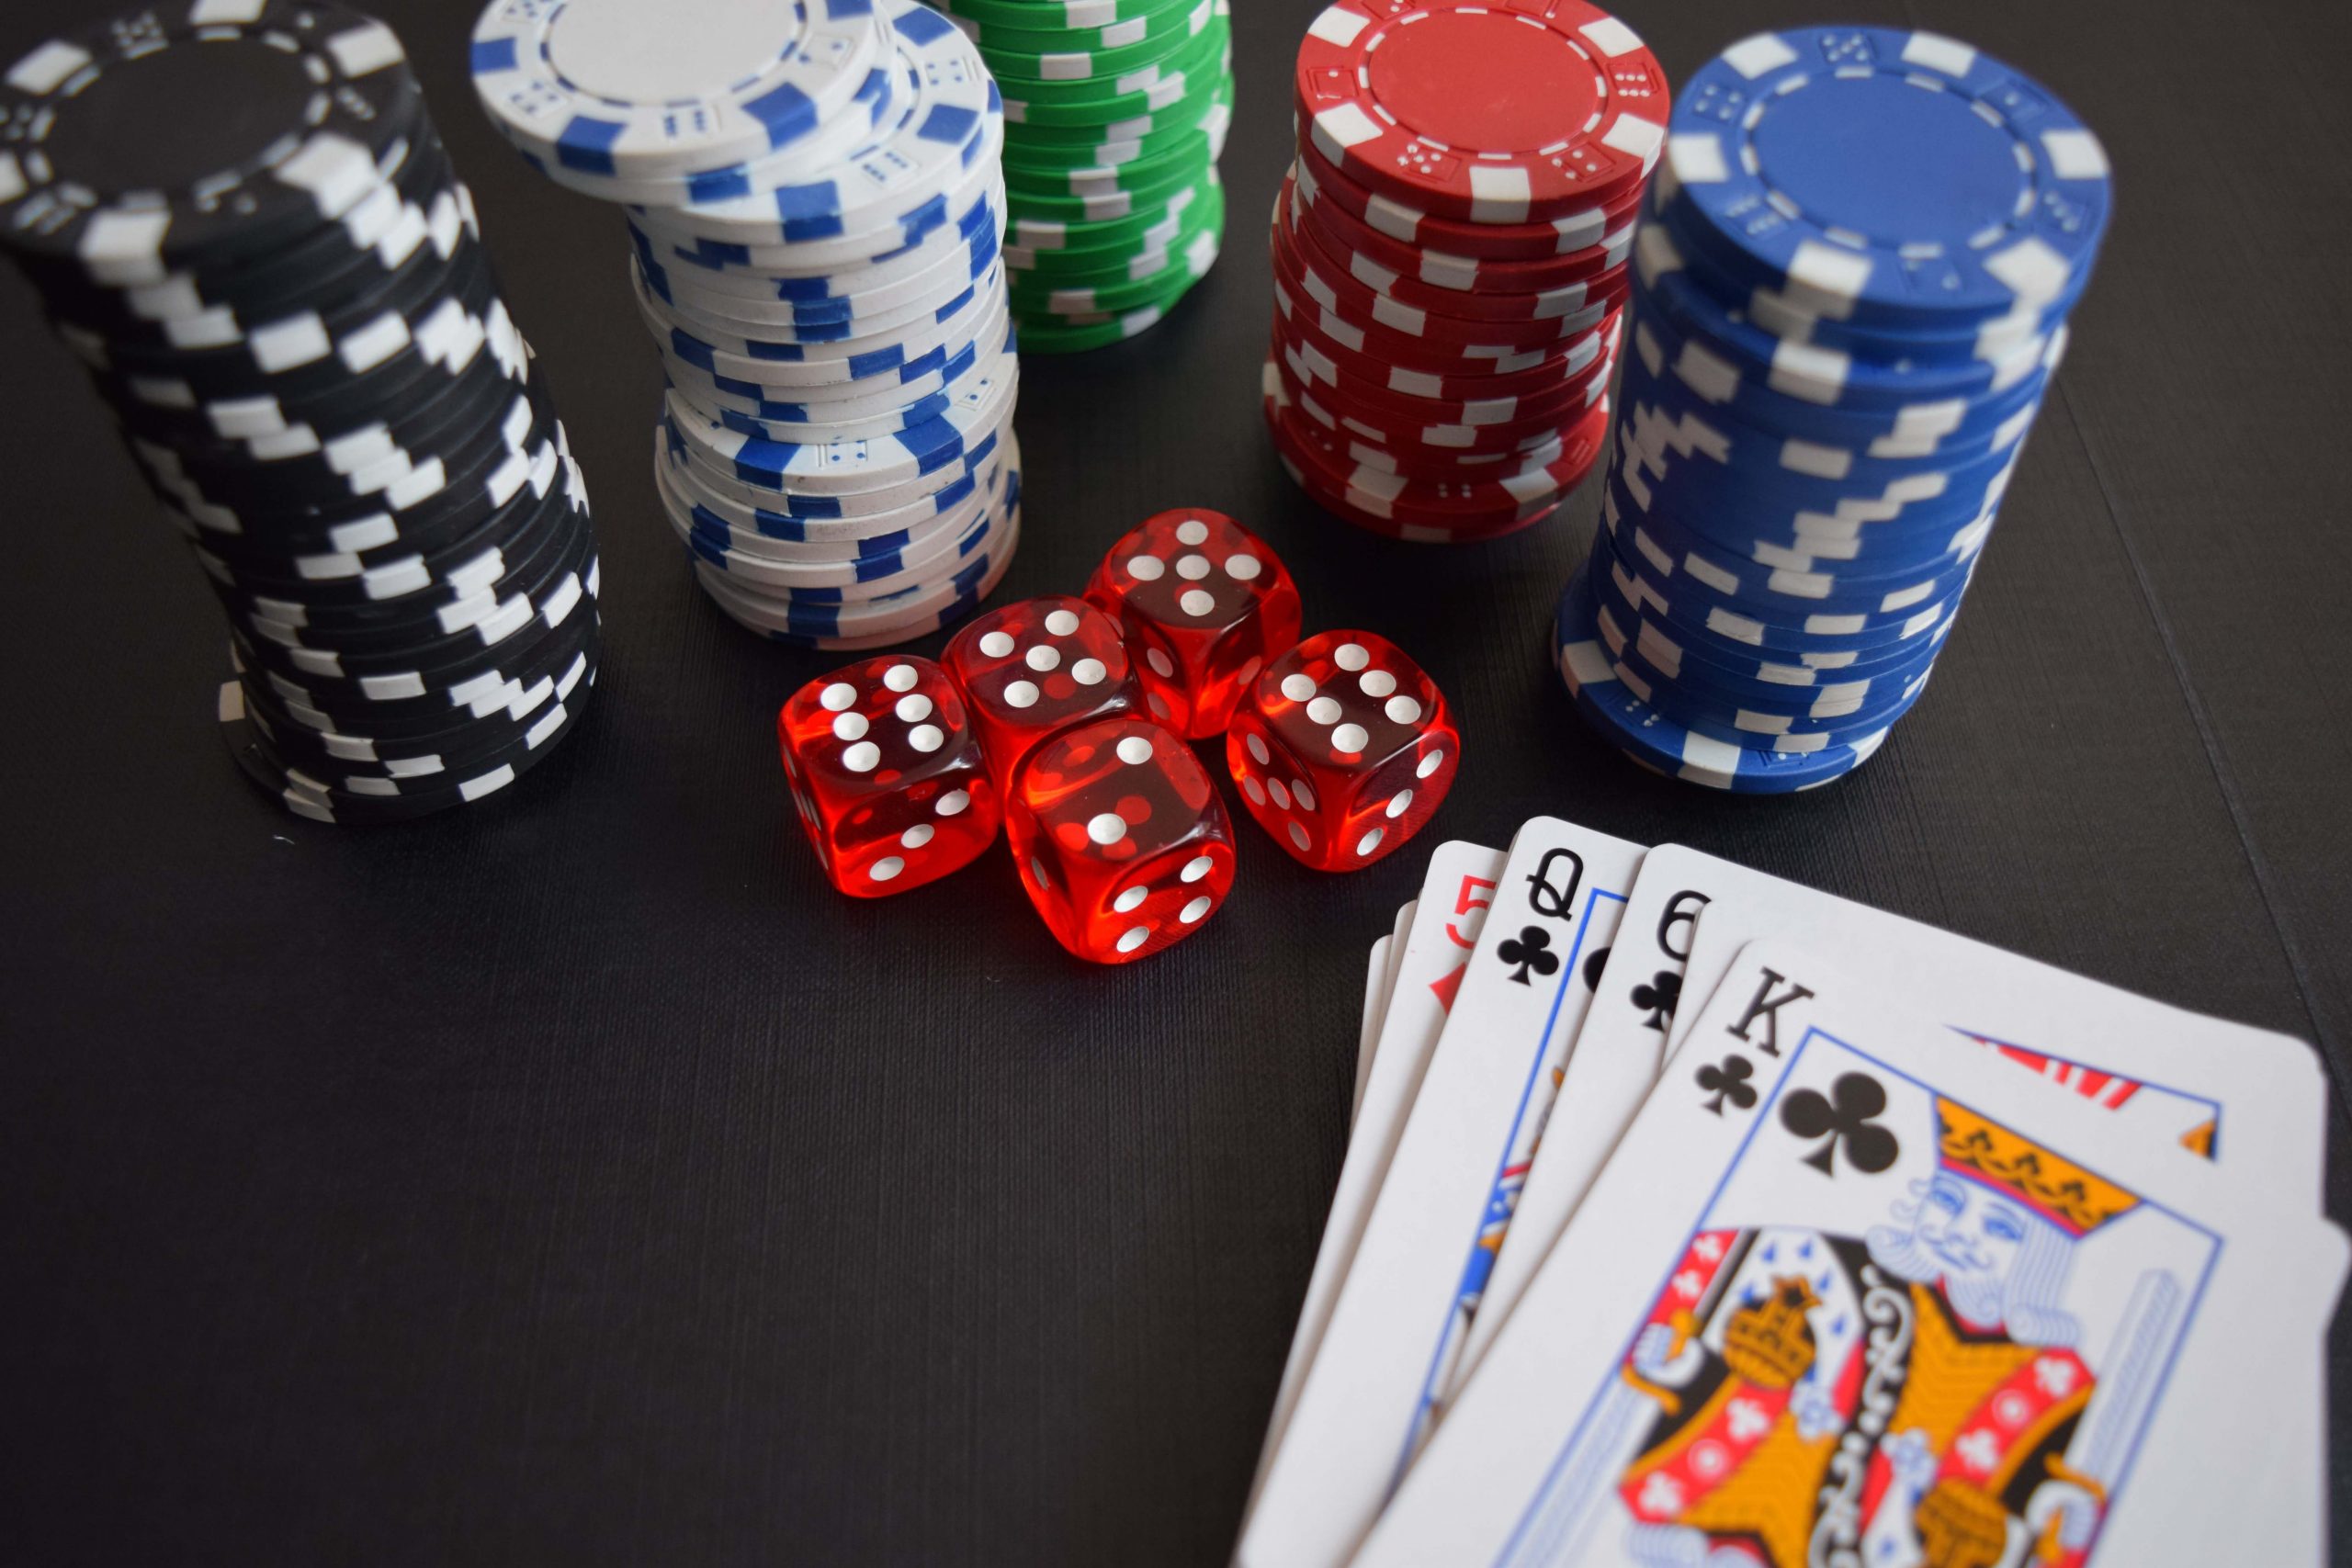 Casinobranschen fortsätter att växa i stadig takt – antalet nya casinon ökar